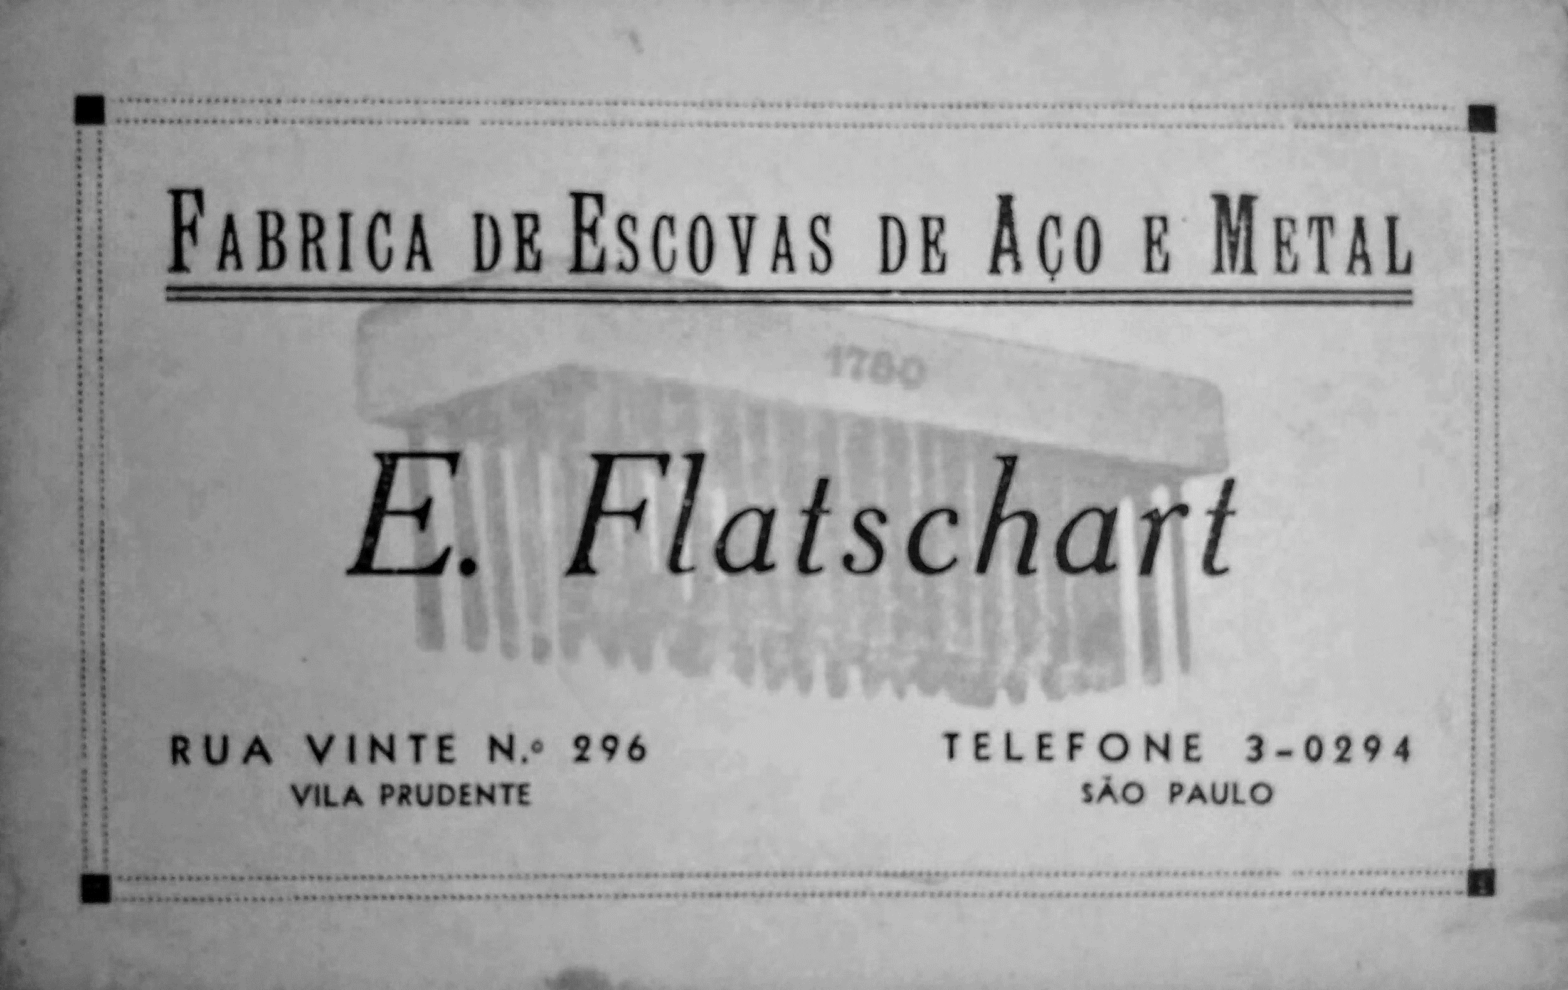 Cartão de visita E. Flatschart.